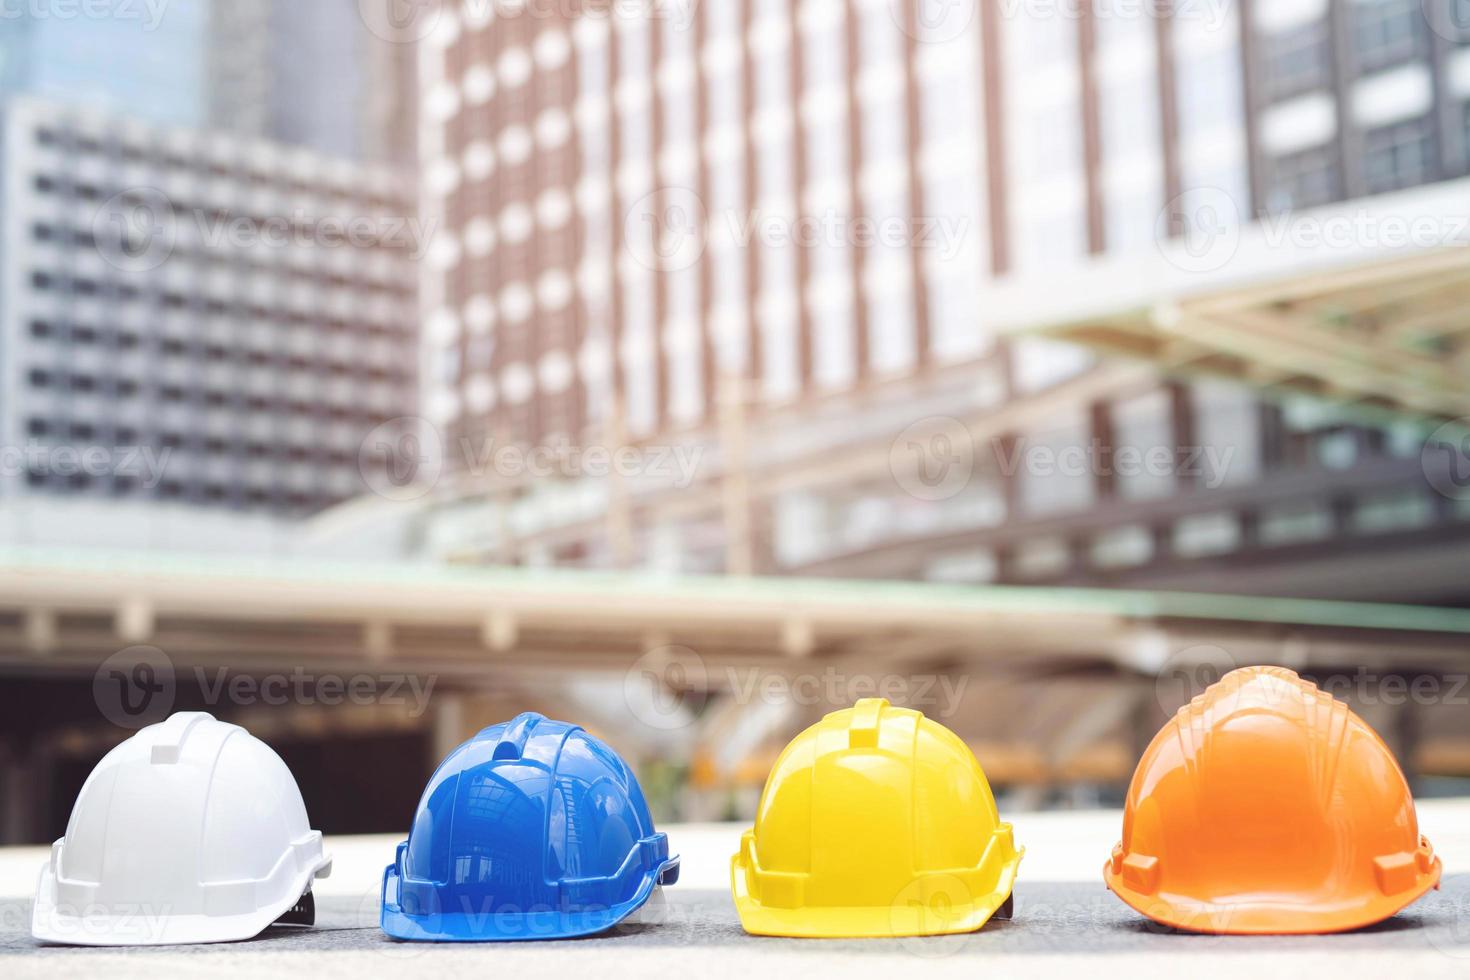 casque de sécurité orange, jaune, bleu, blanc dans le projet sur le chantier de construction sur sol en béton sur la ville. casque pour ouvrier comme ingénieur ou ouvrier. concept de sécurité d'abord. photo